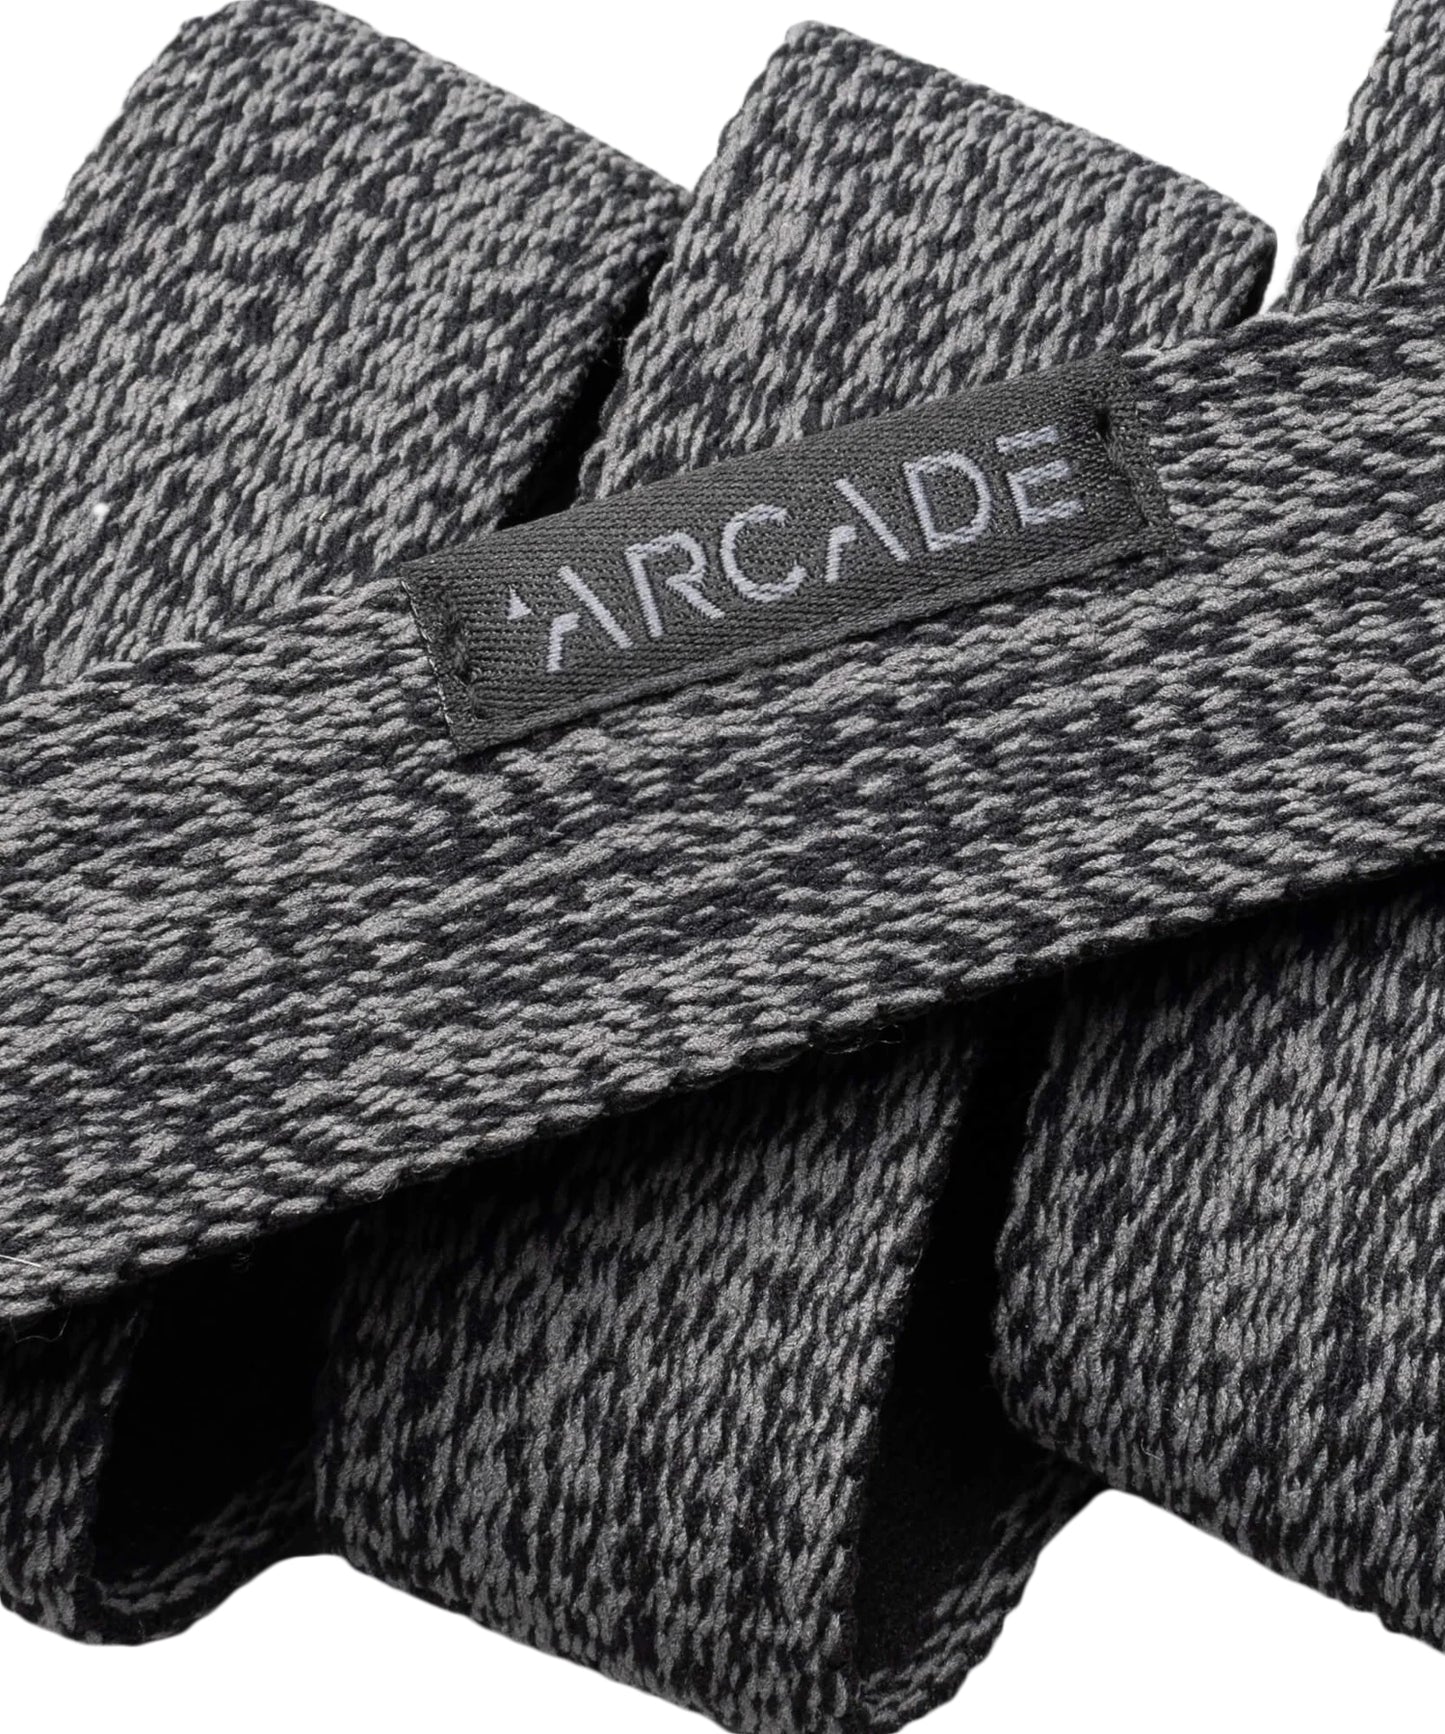 arcade-belt-cinturon-ranger-slim-color-ceniza-elastico-comodo-y-duradero-para-hebillas-esrtechas.